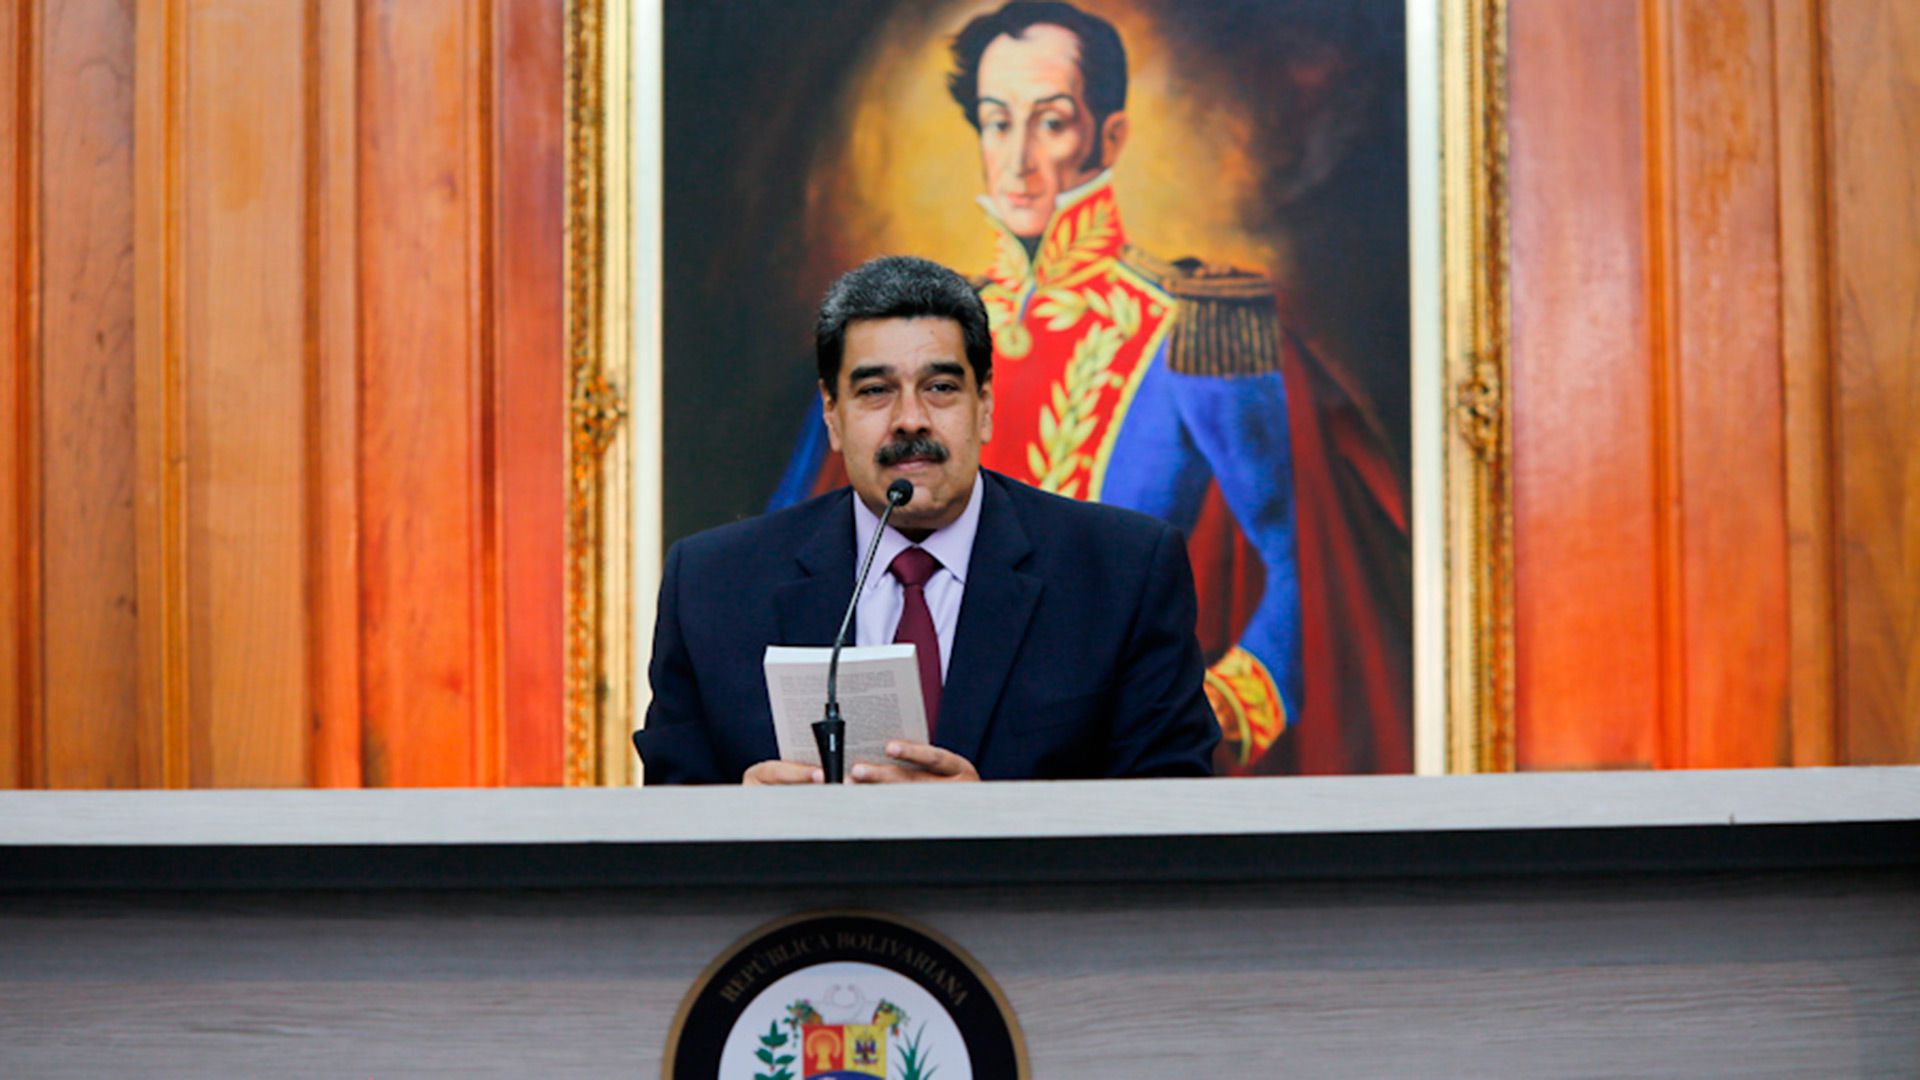 El dictador Nicolás Maduro llamó a "educar" a la sociedad con el ideario revolucionario